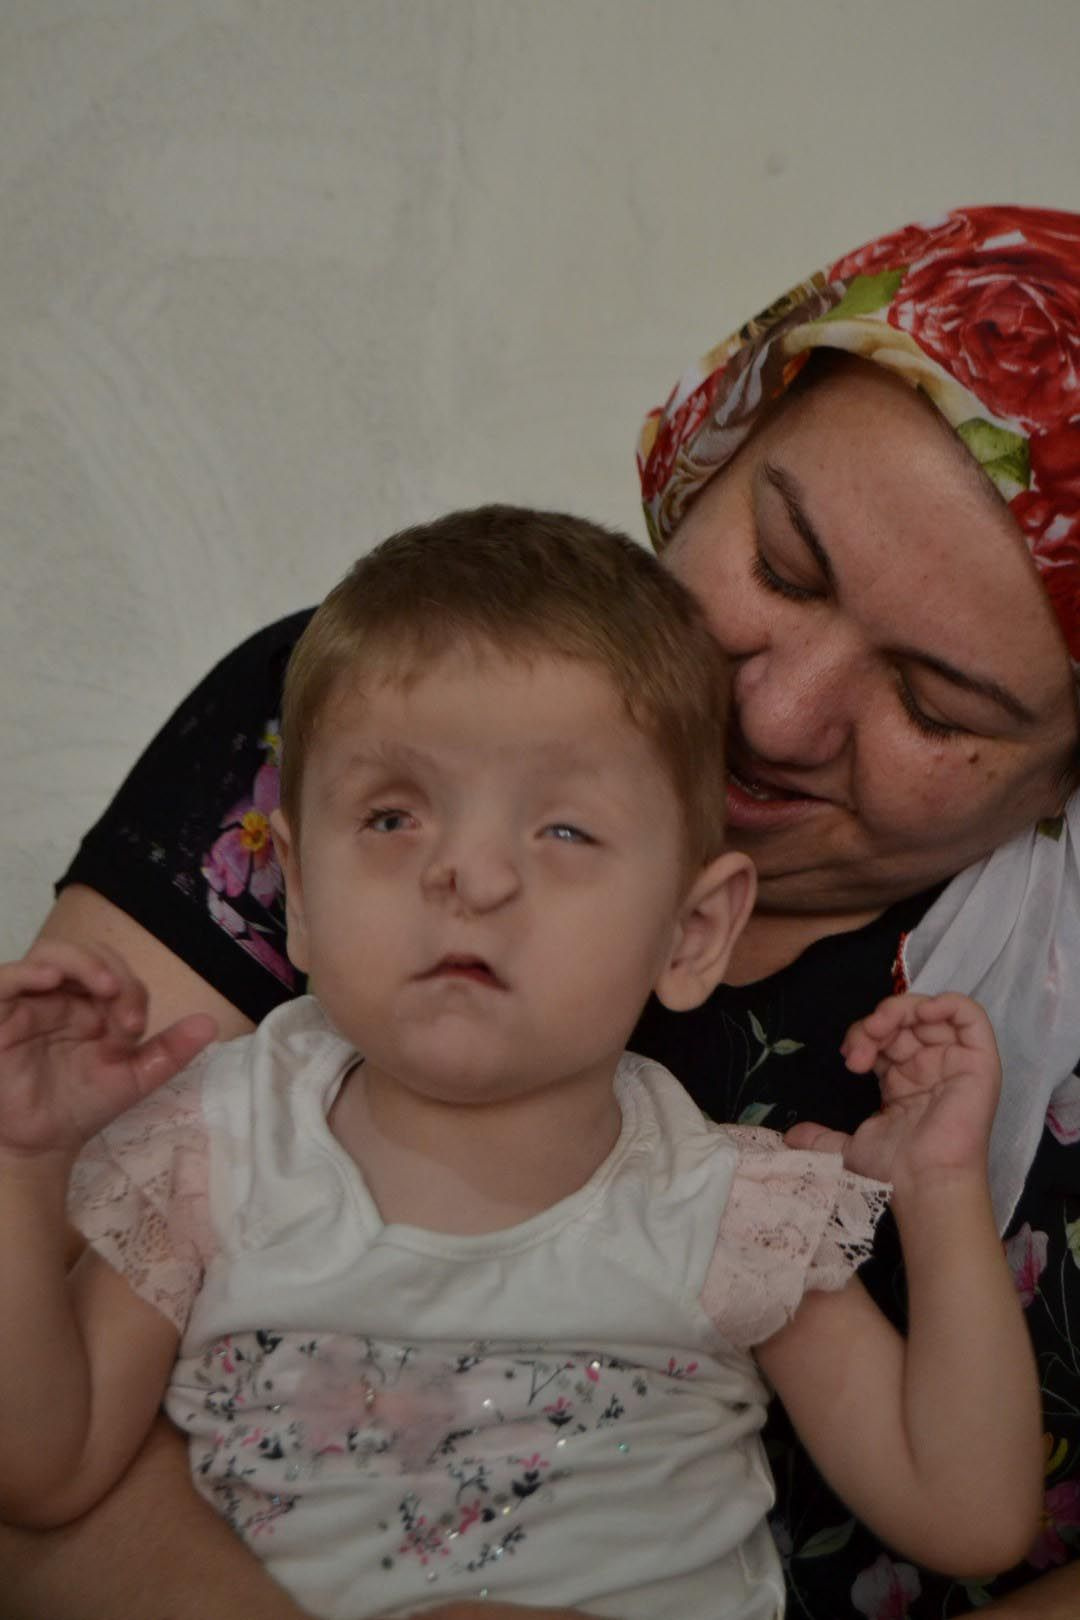 Burun delikleri yok sırtında tümör var Manisa'da Sevgi Hira annesini temasla tanıyor